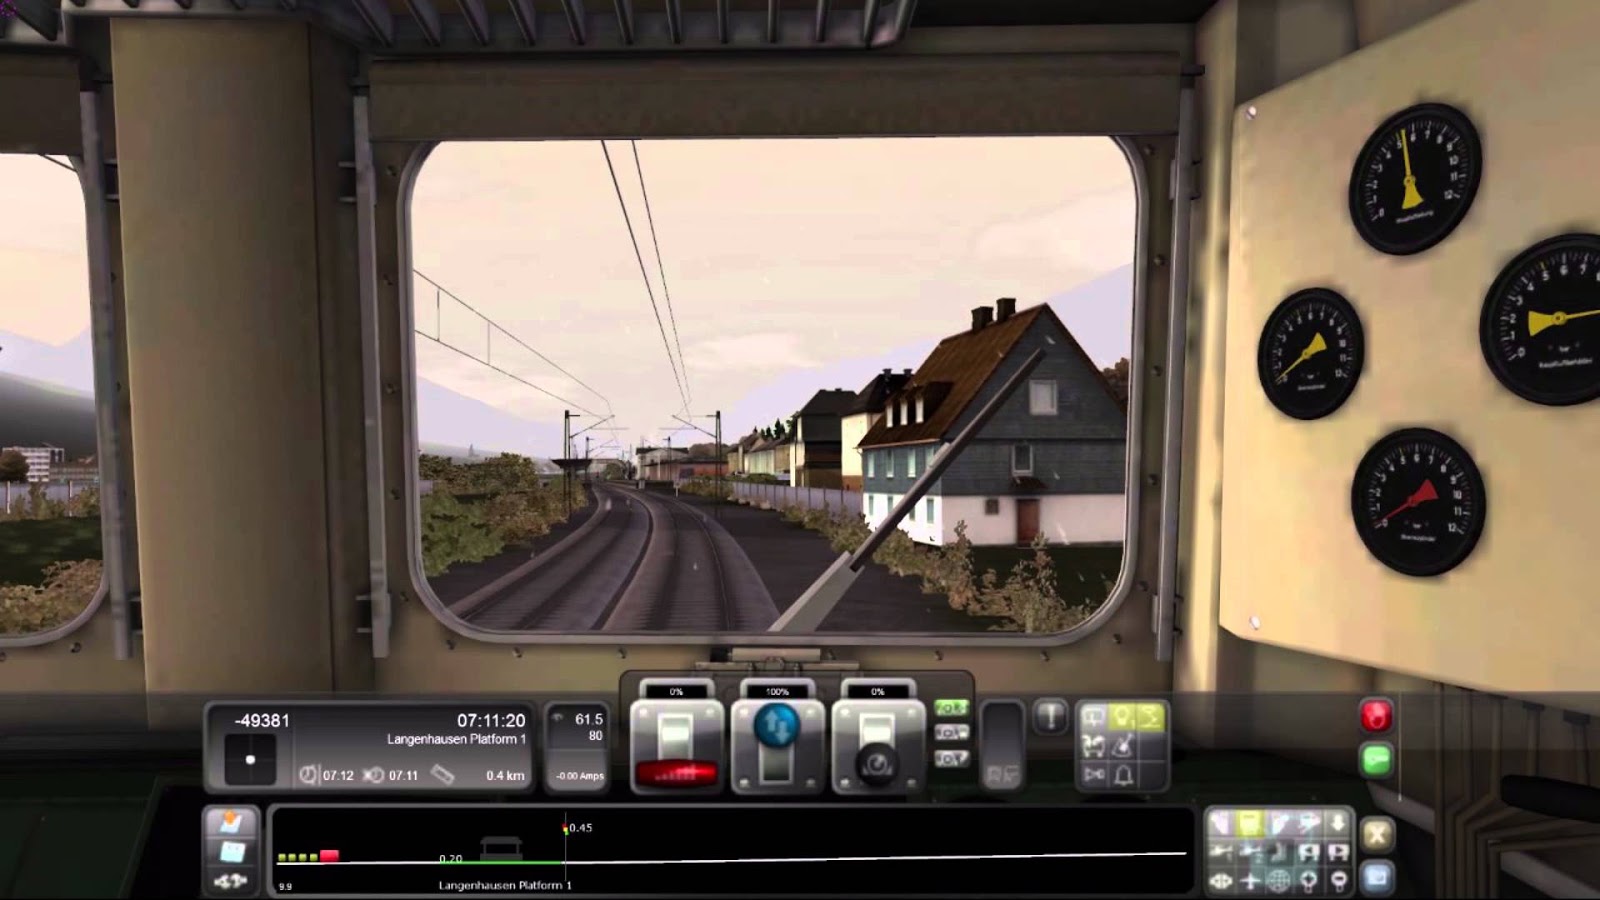 Microsoft Train Simulator Download Full